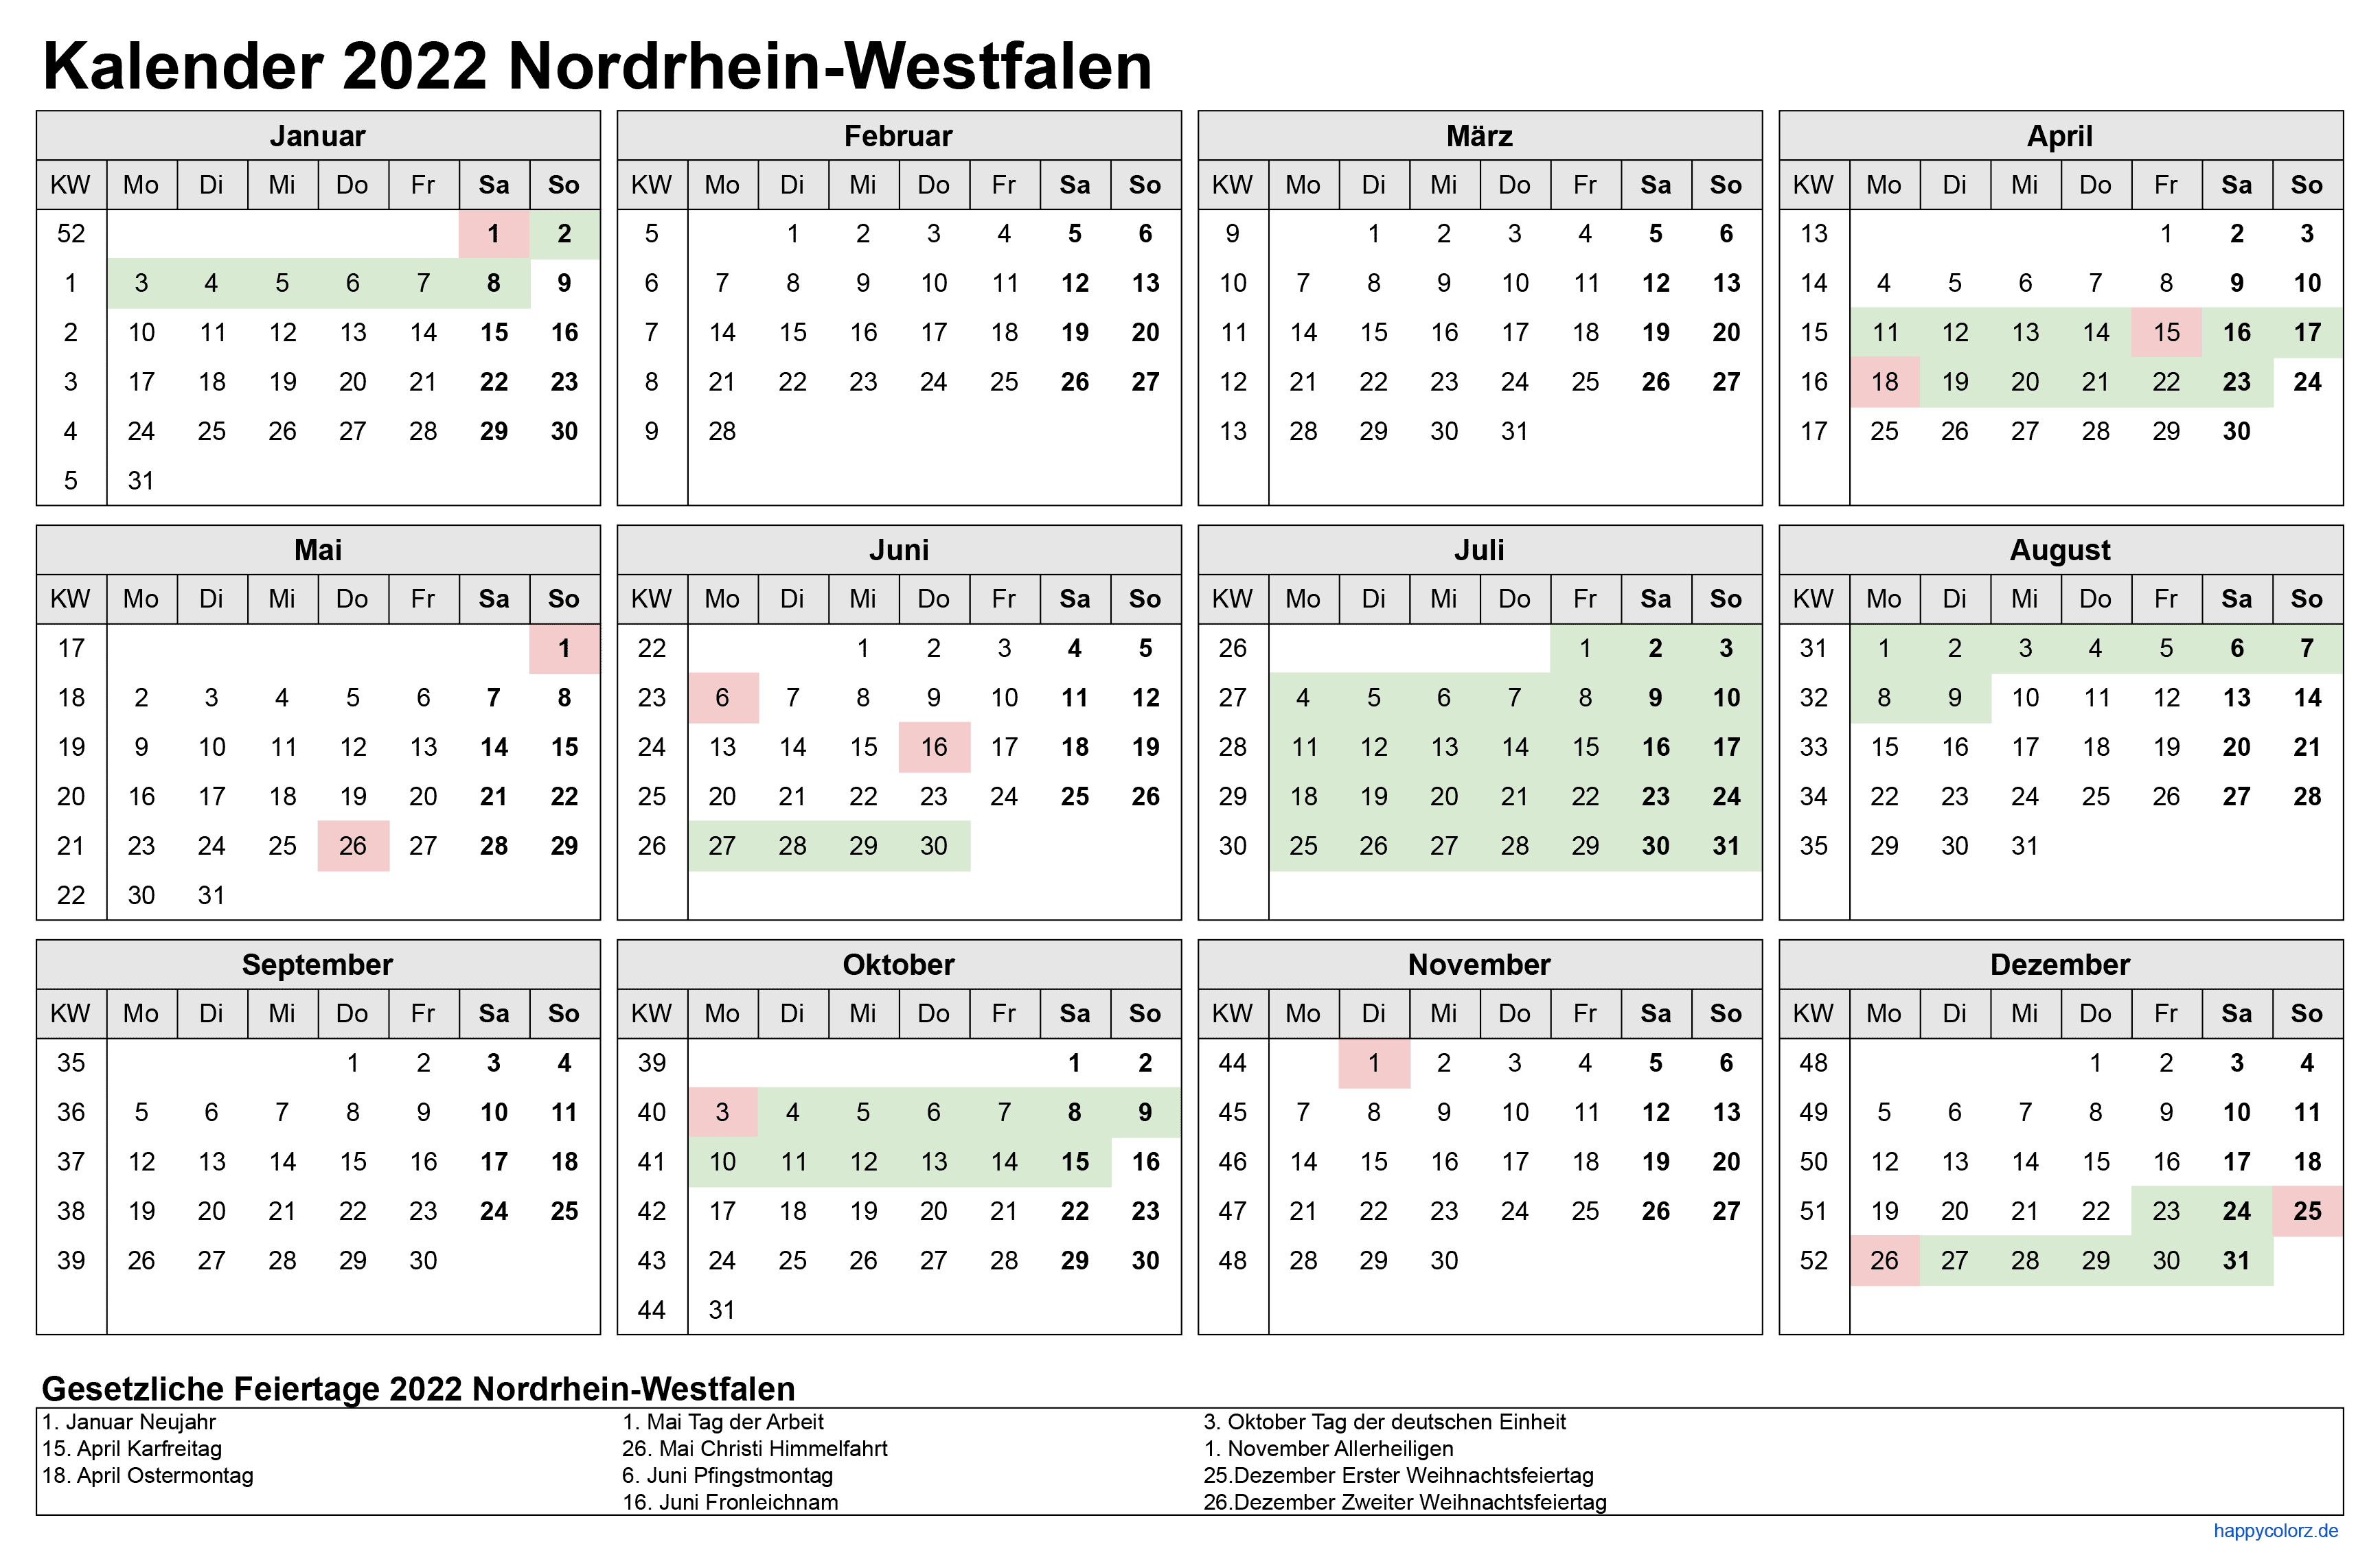 Kalender 2022 NRW zum Ausdrucken